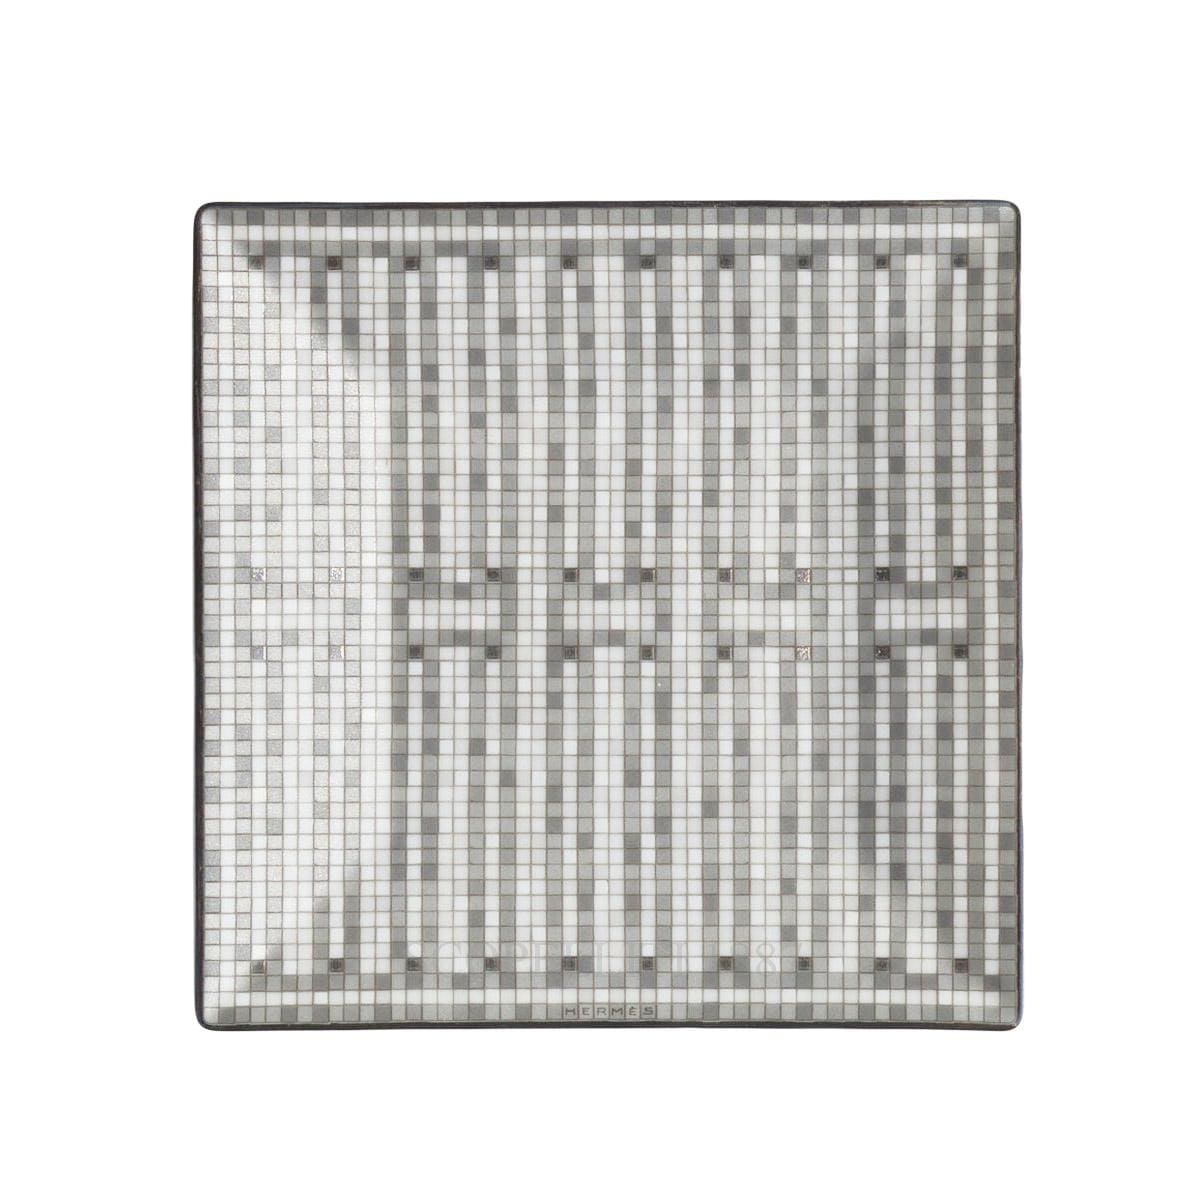 Hermes Mosaique au 24 platinum Square Plate n°2